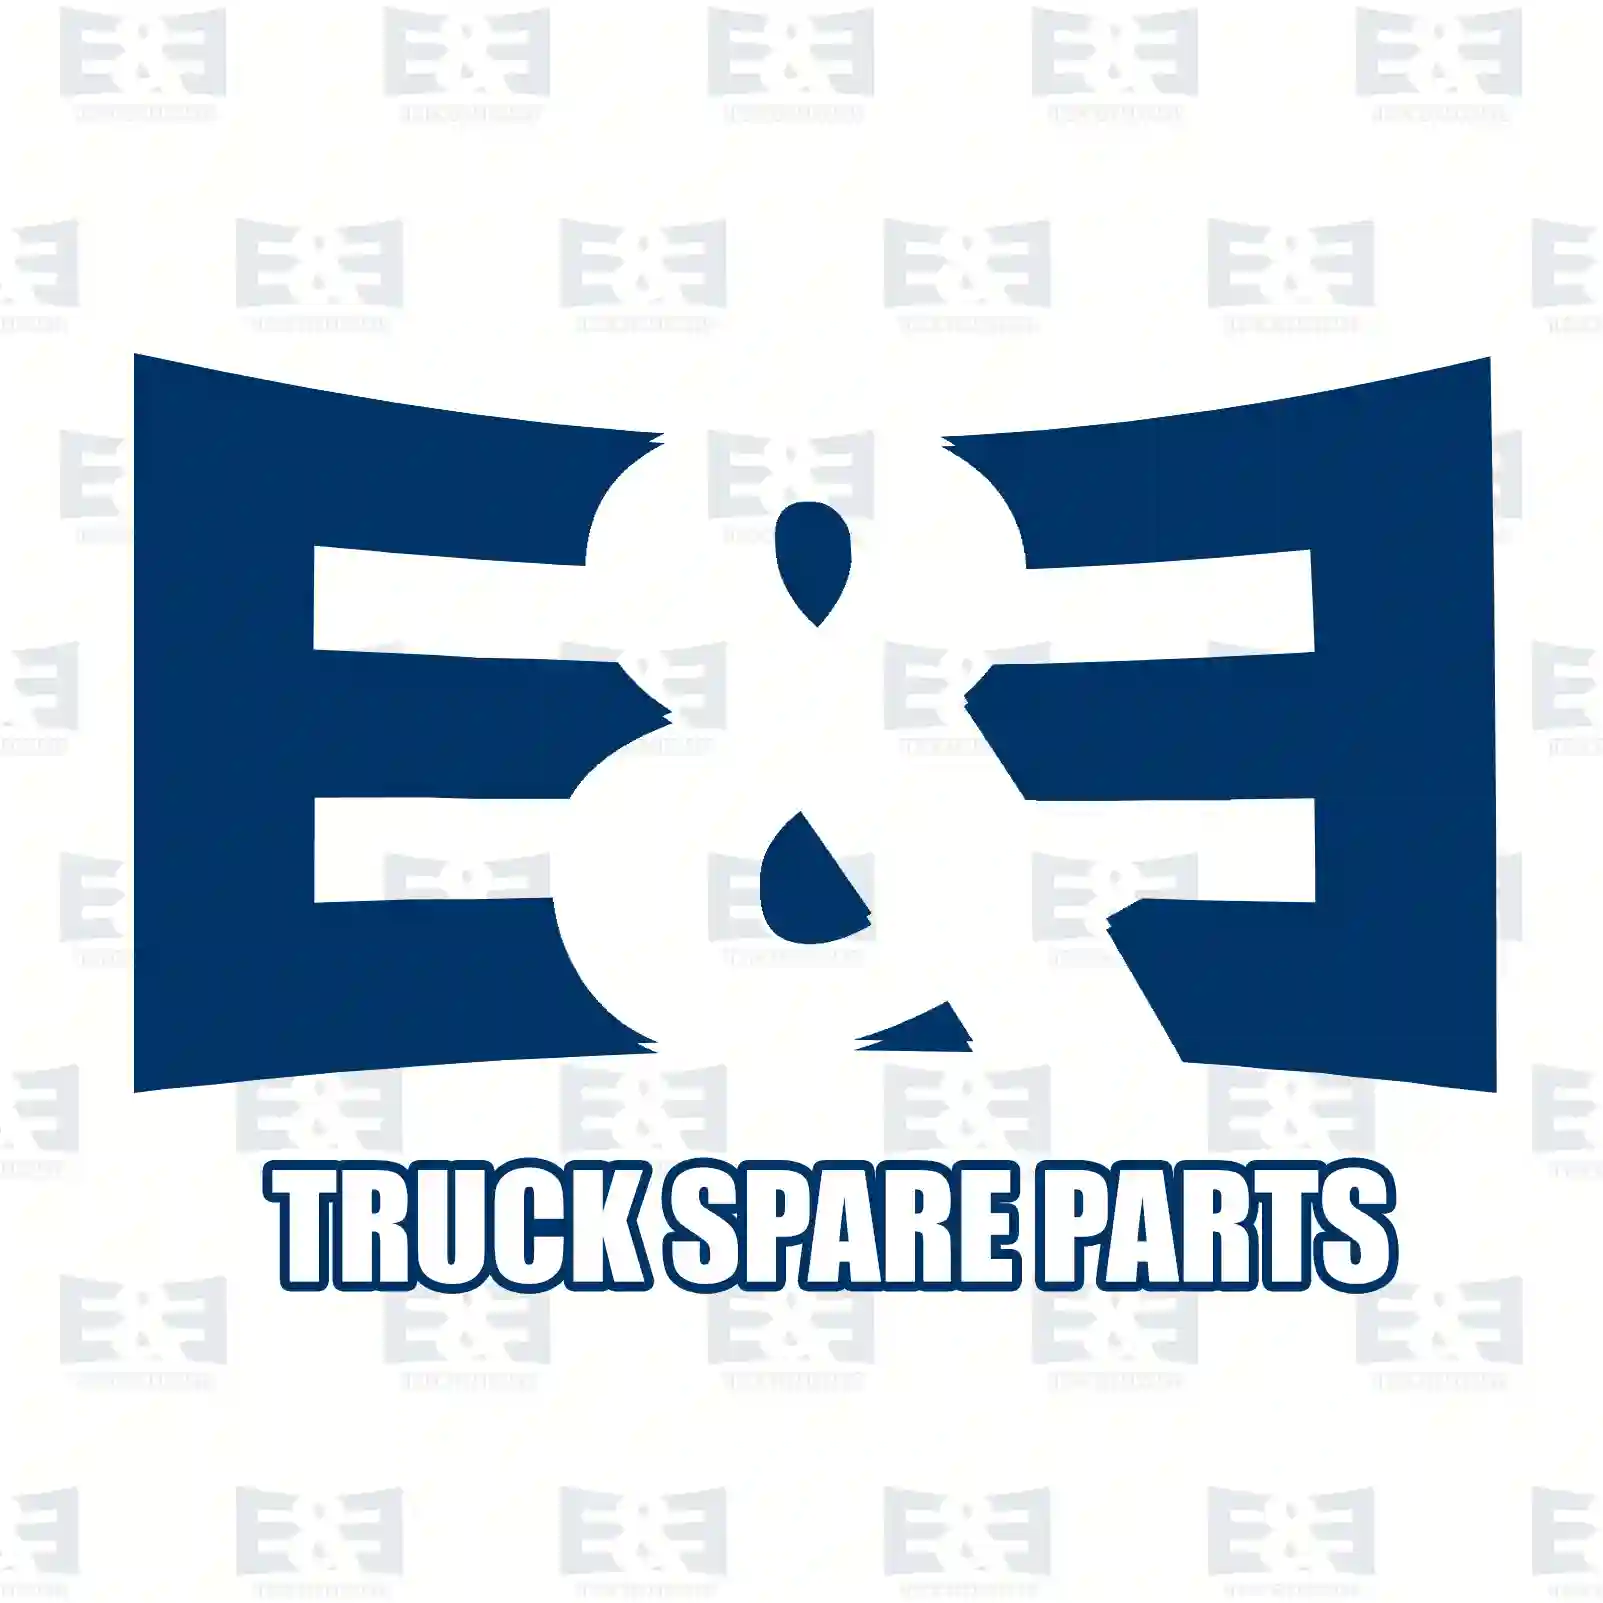 Air tank, 2E2294218, 5021170372, 1935527, , , ||  2E2294218 E&E Truck Spare Parts | Truck Spare Parts, Auotomotive Spare Parts Air tank, 2E2294218, 5021170372, 1935527, , , ||  2E2294218 E&E Truck Spare Parts | Truck Spare Parts, Auotomotive Spare Parts